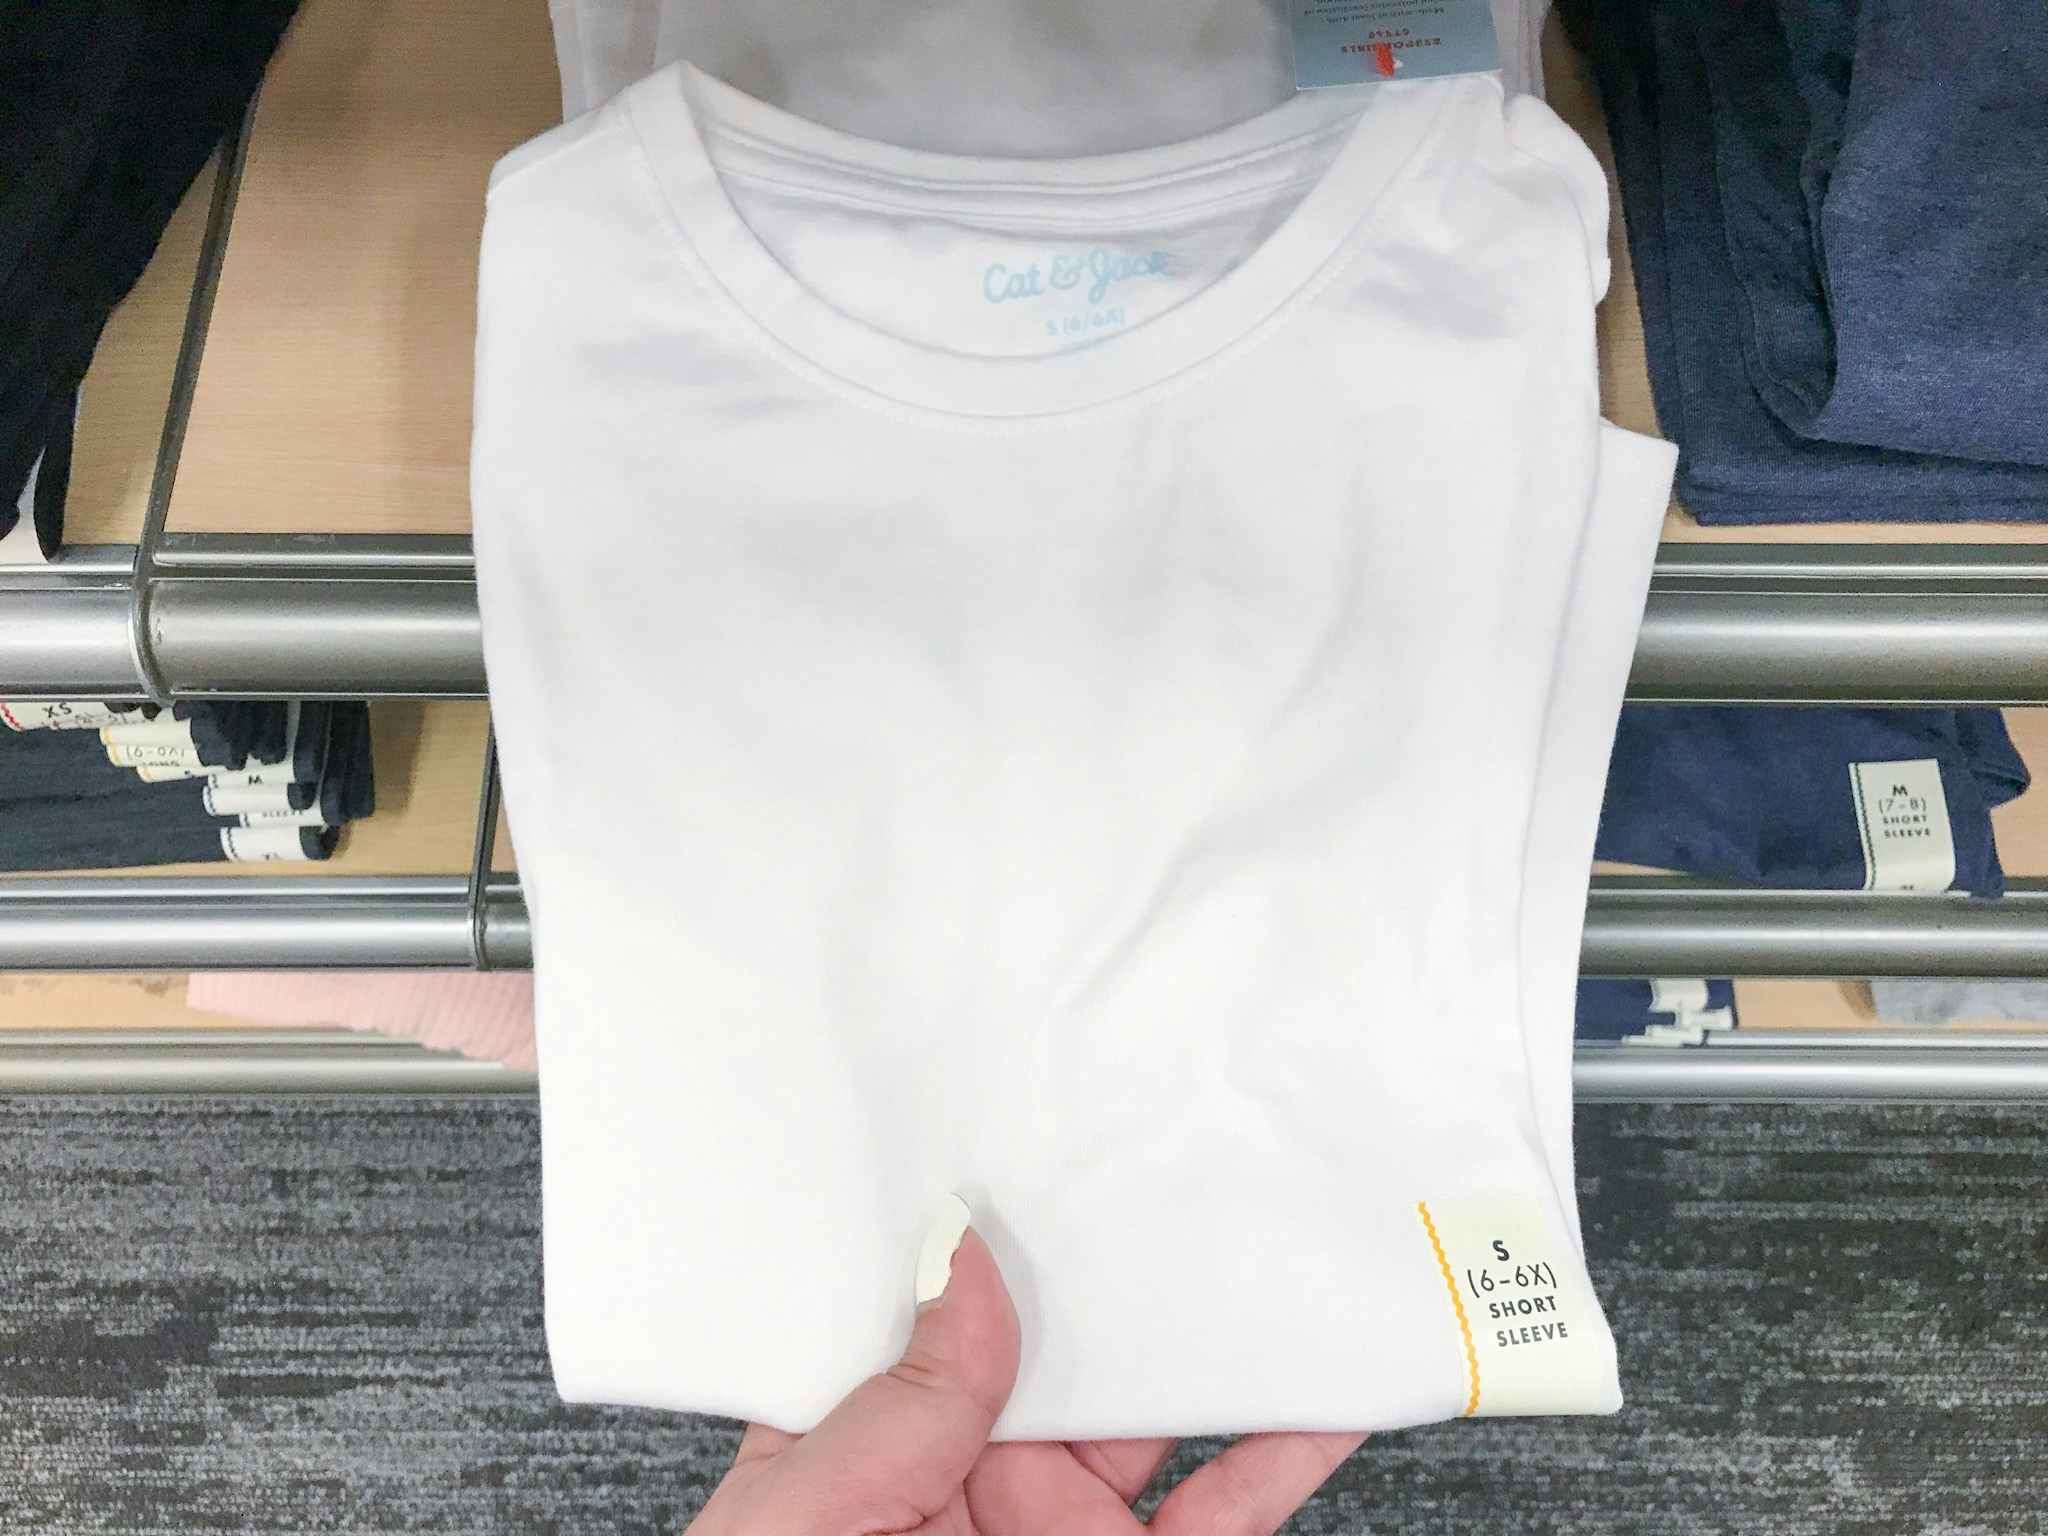 hand grabbing a white cat & jack t-shirt off a target shelf